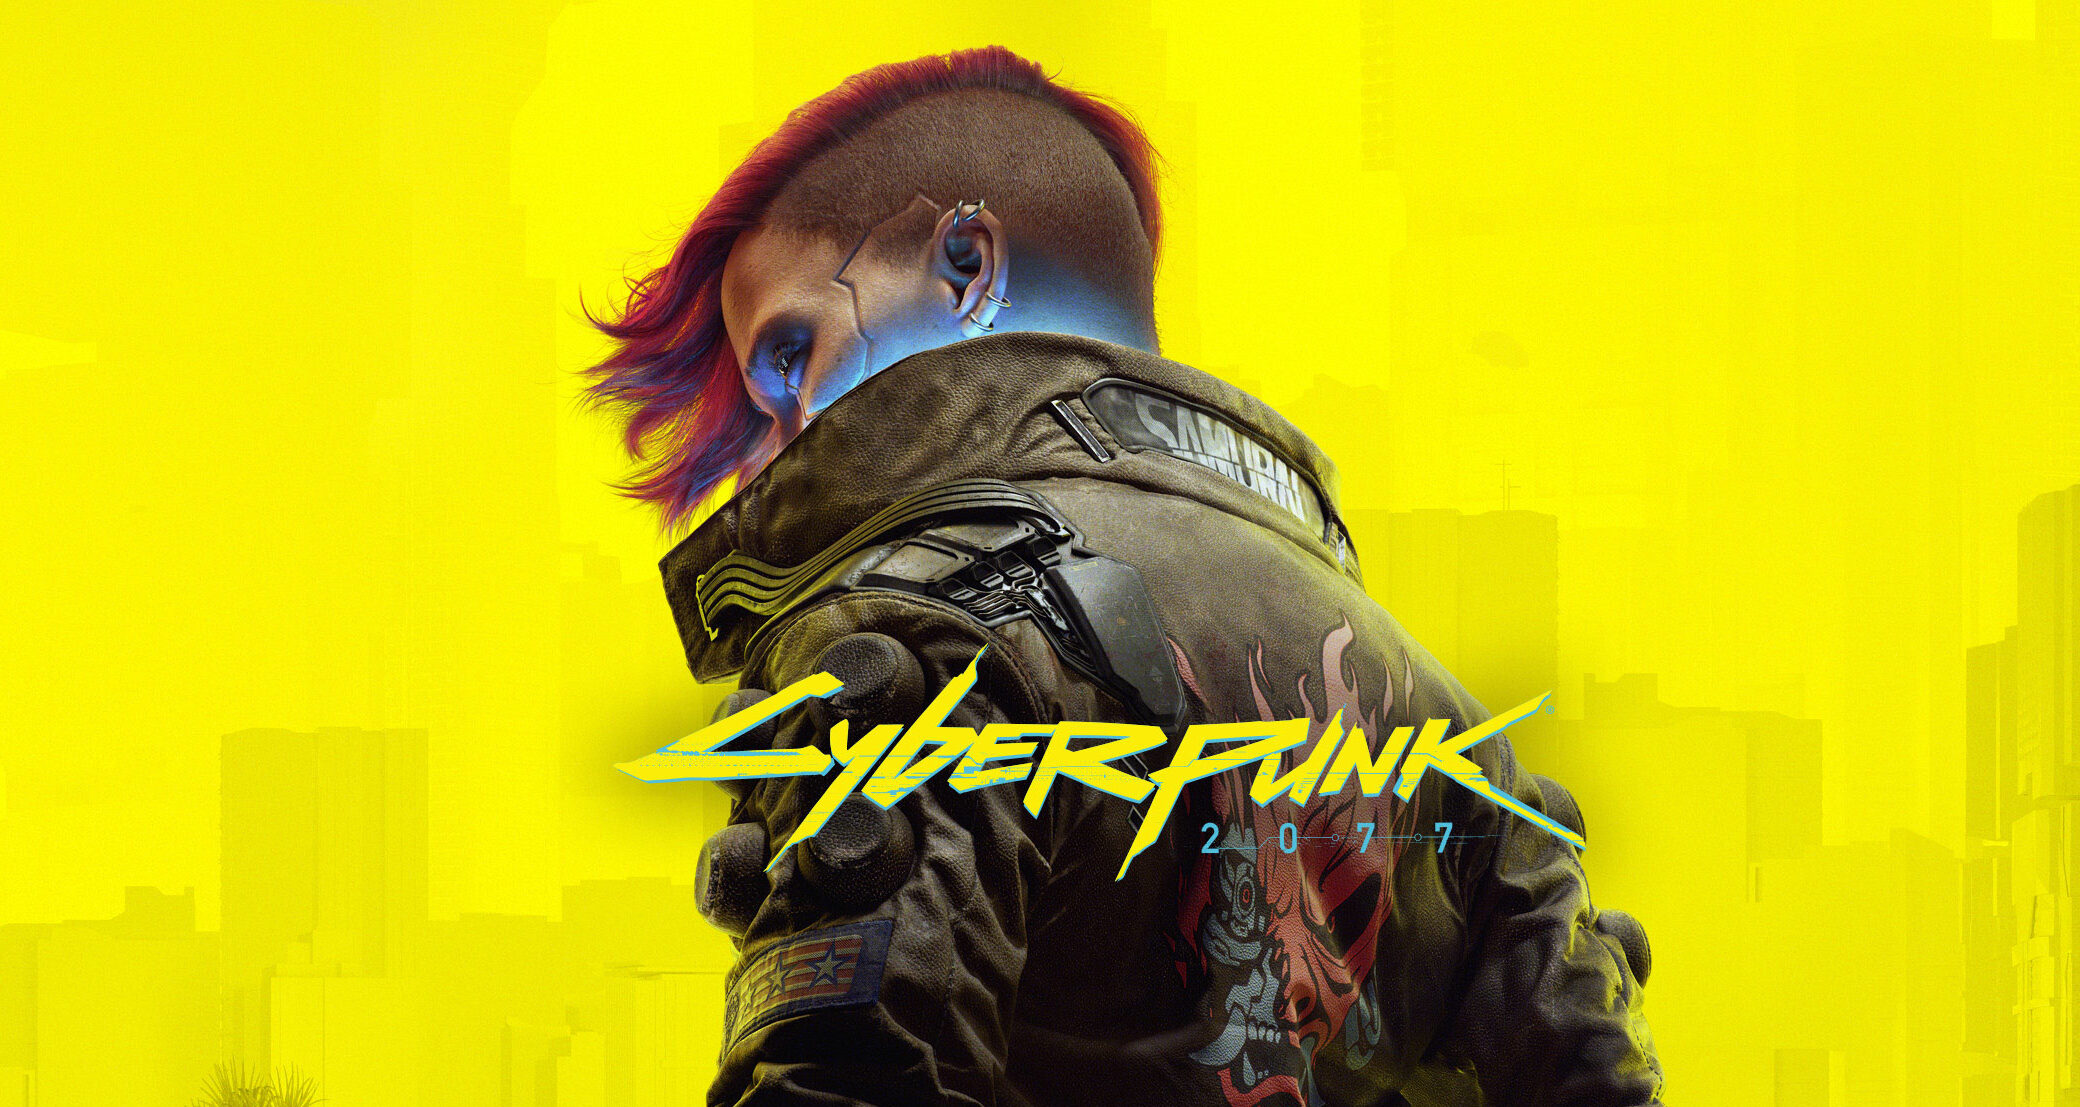 Assistir Cyberpunk: Edgerunners - ver séries online